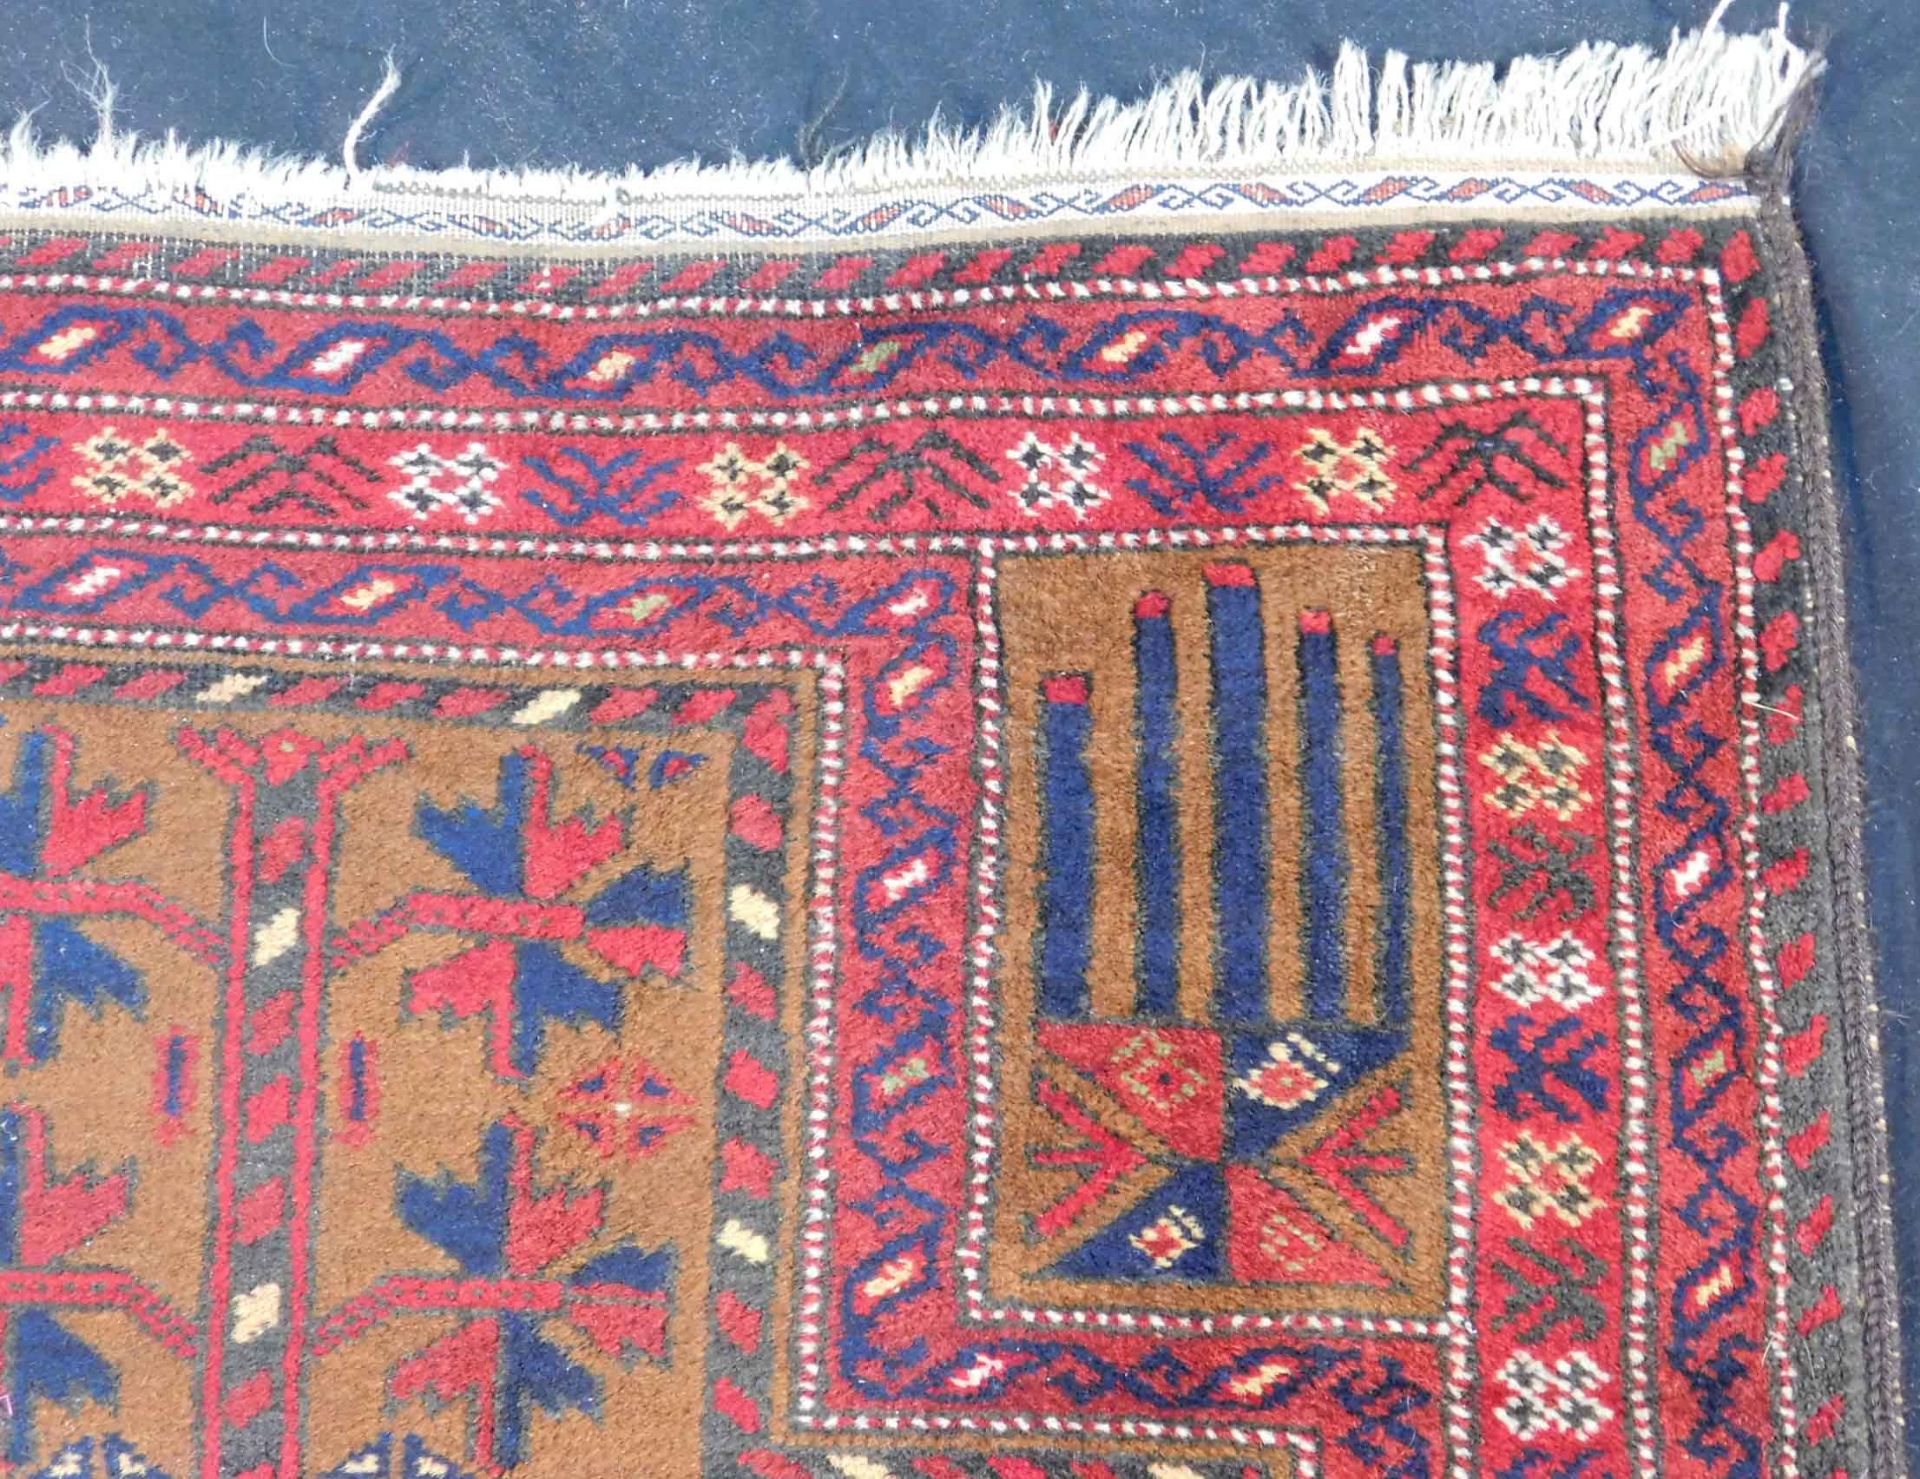 Baluchi prayer rug. Around 60 - 90 years old. - Image 4 of 5